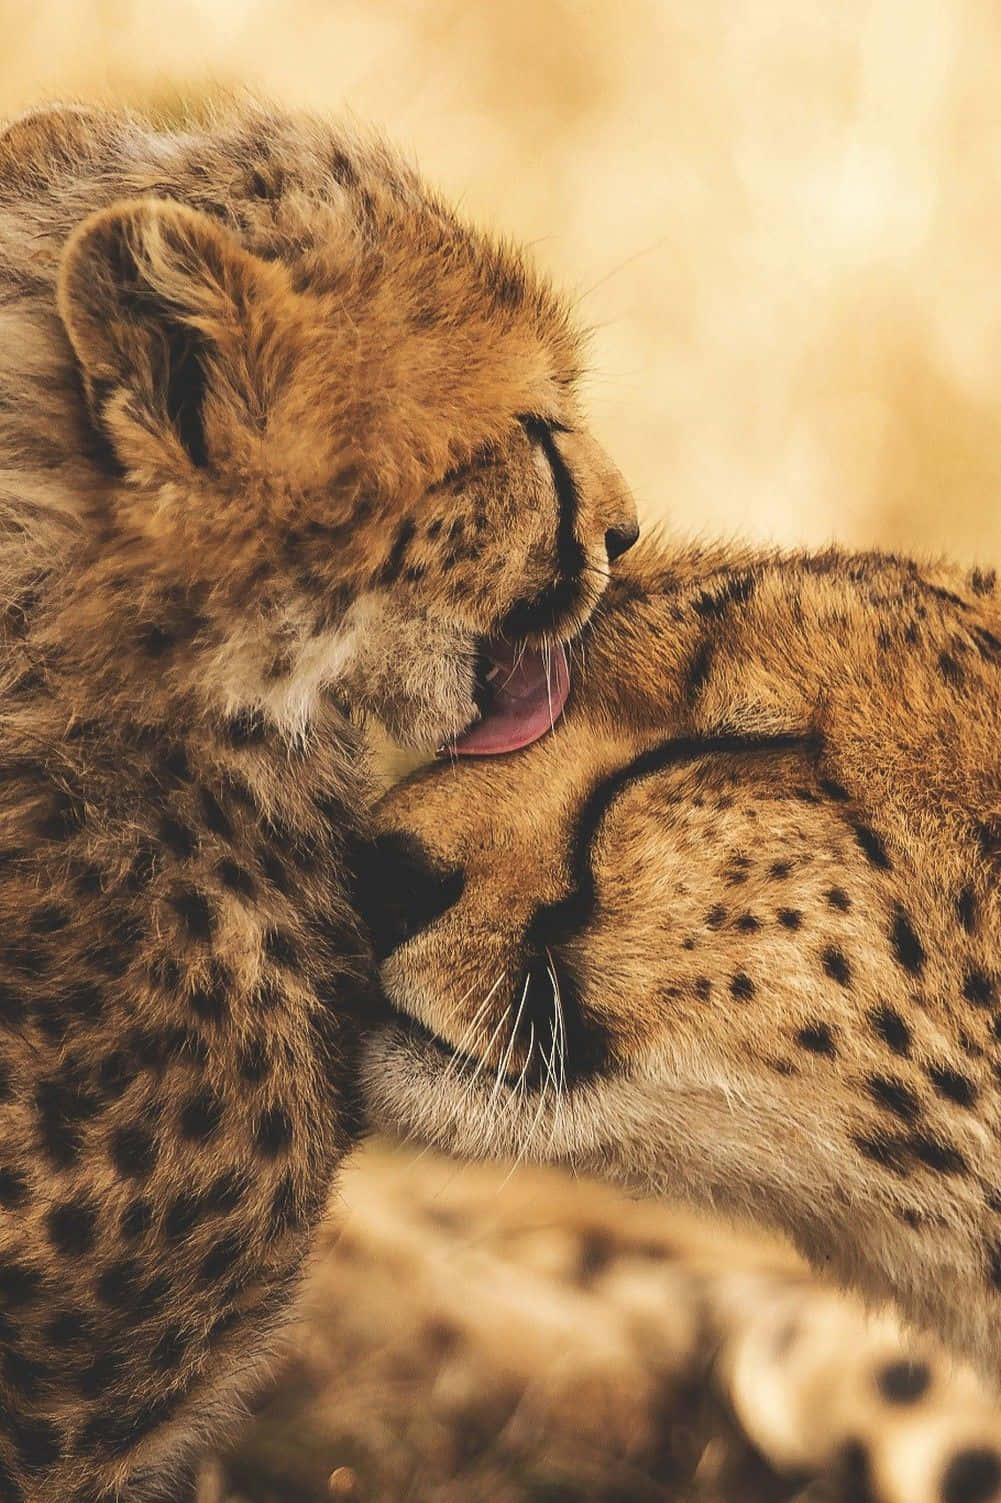 Baby Cheetah Snuggling Its Mama Wallpaper